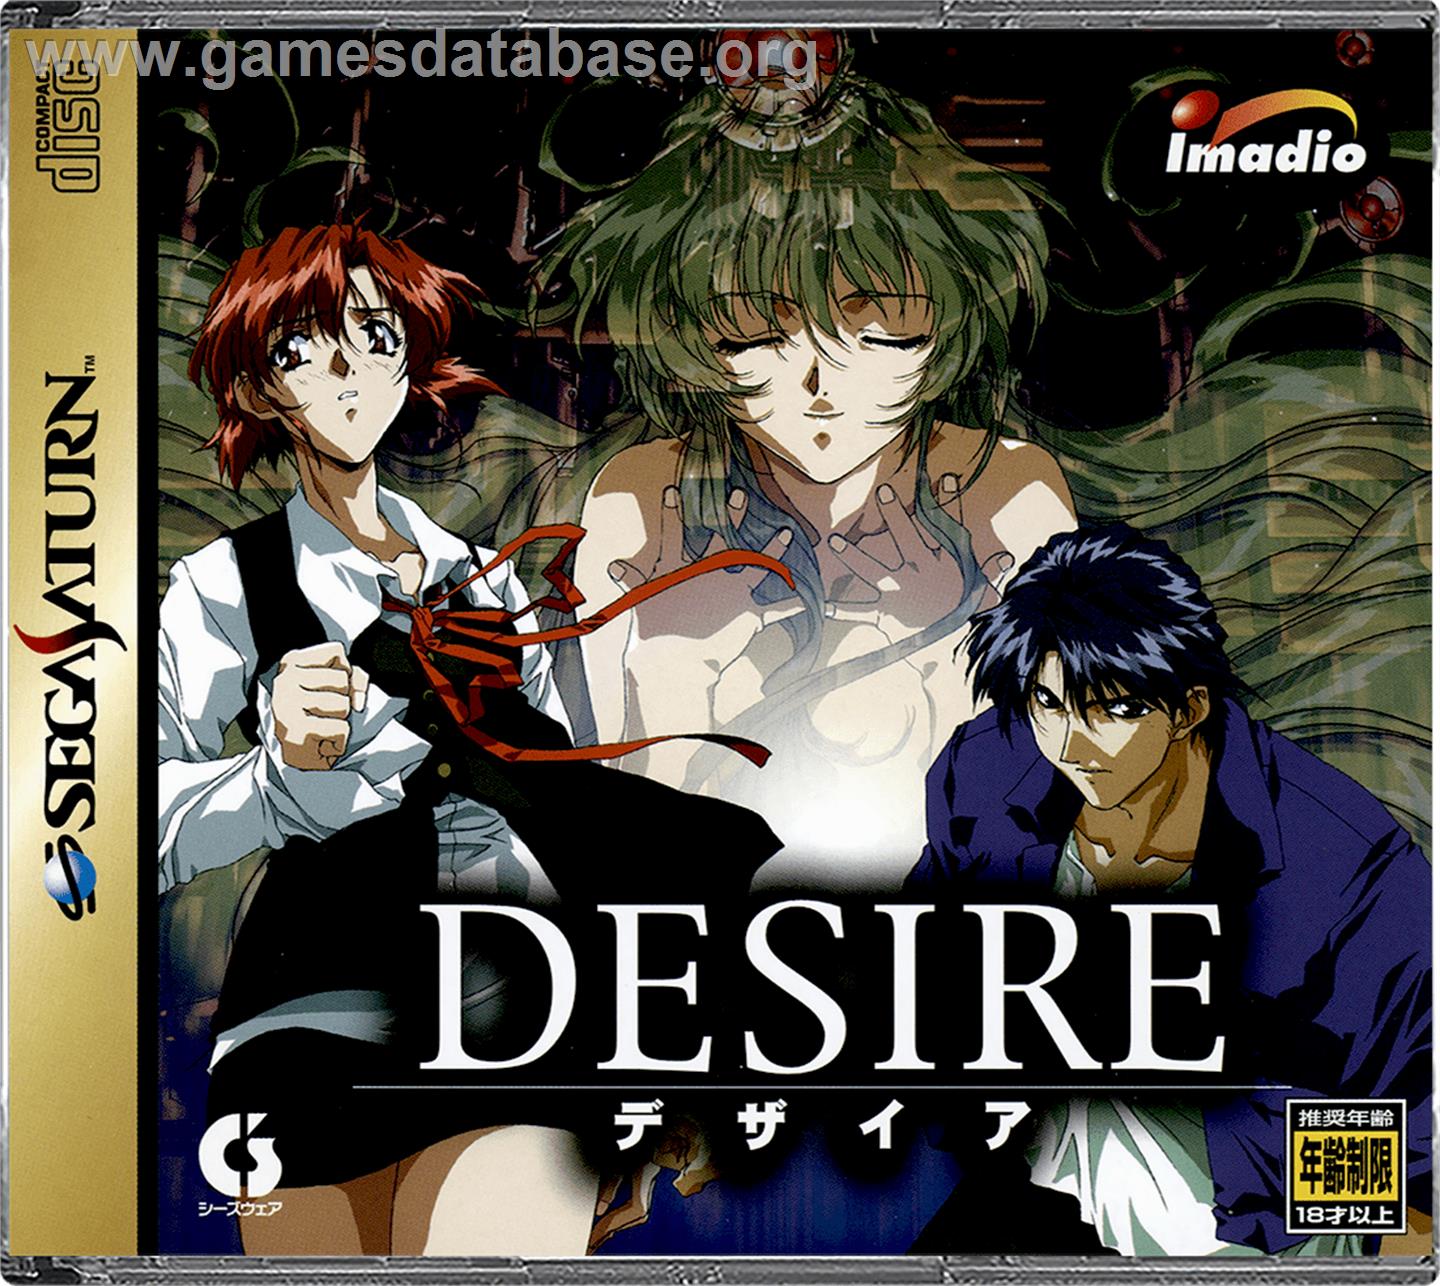 Desire - Sega Saturn - Artwork - Box